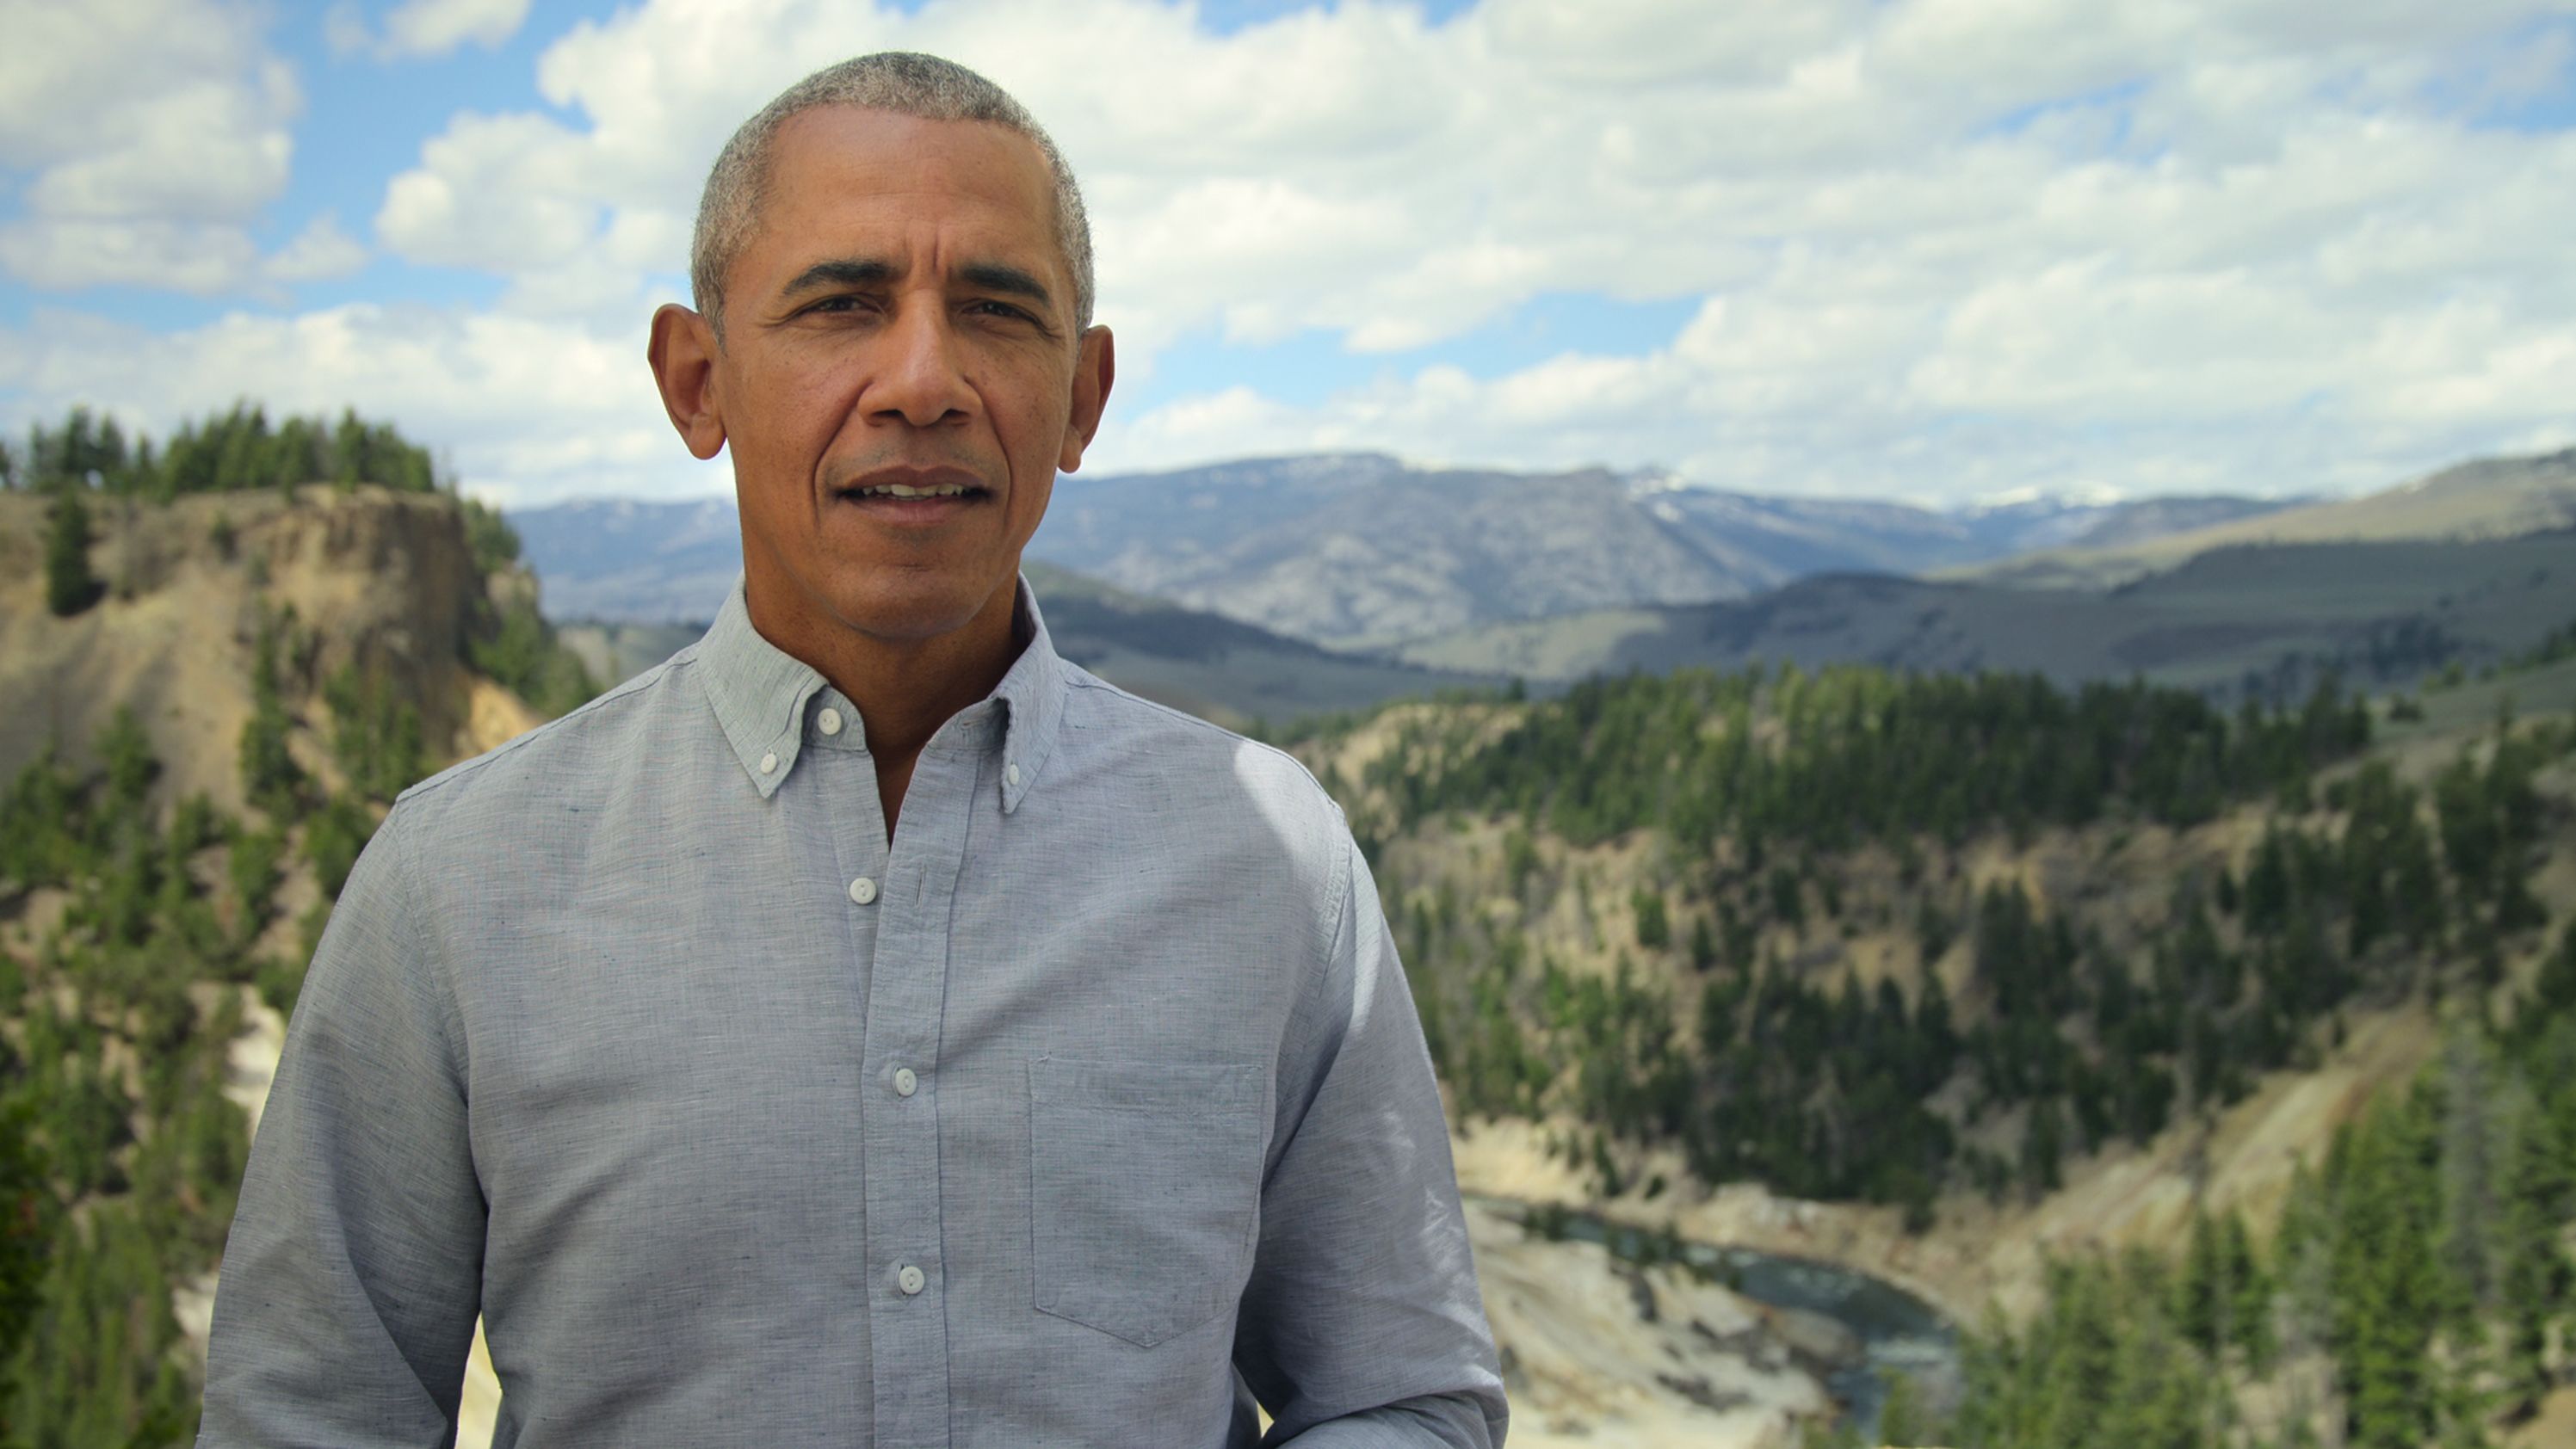 Former president Barack Obama in "Our Great National Parks"